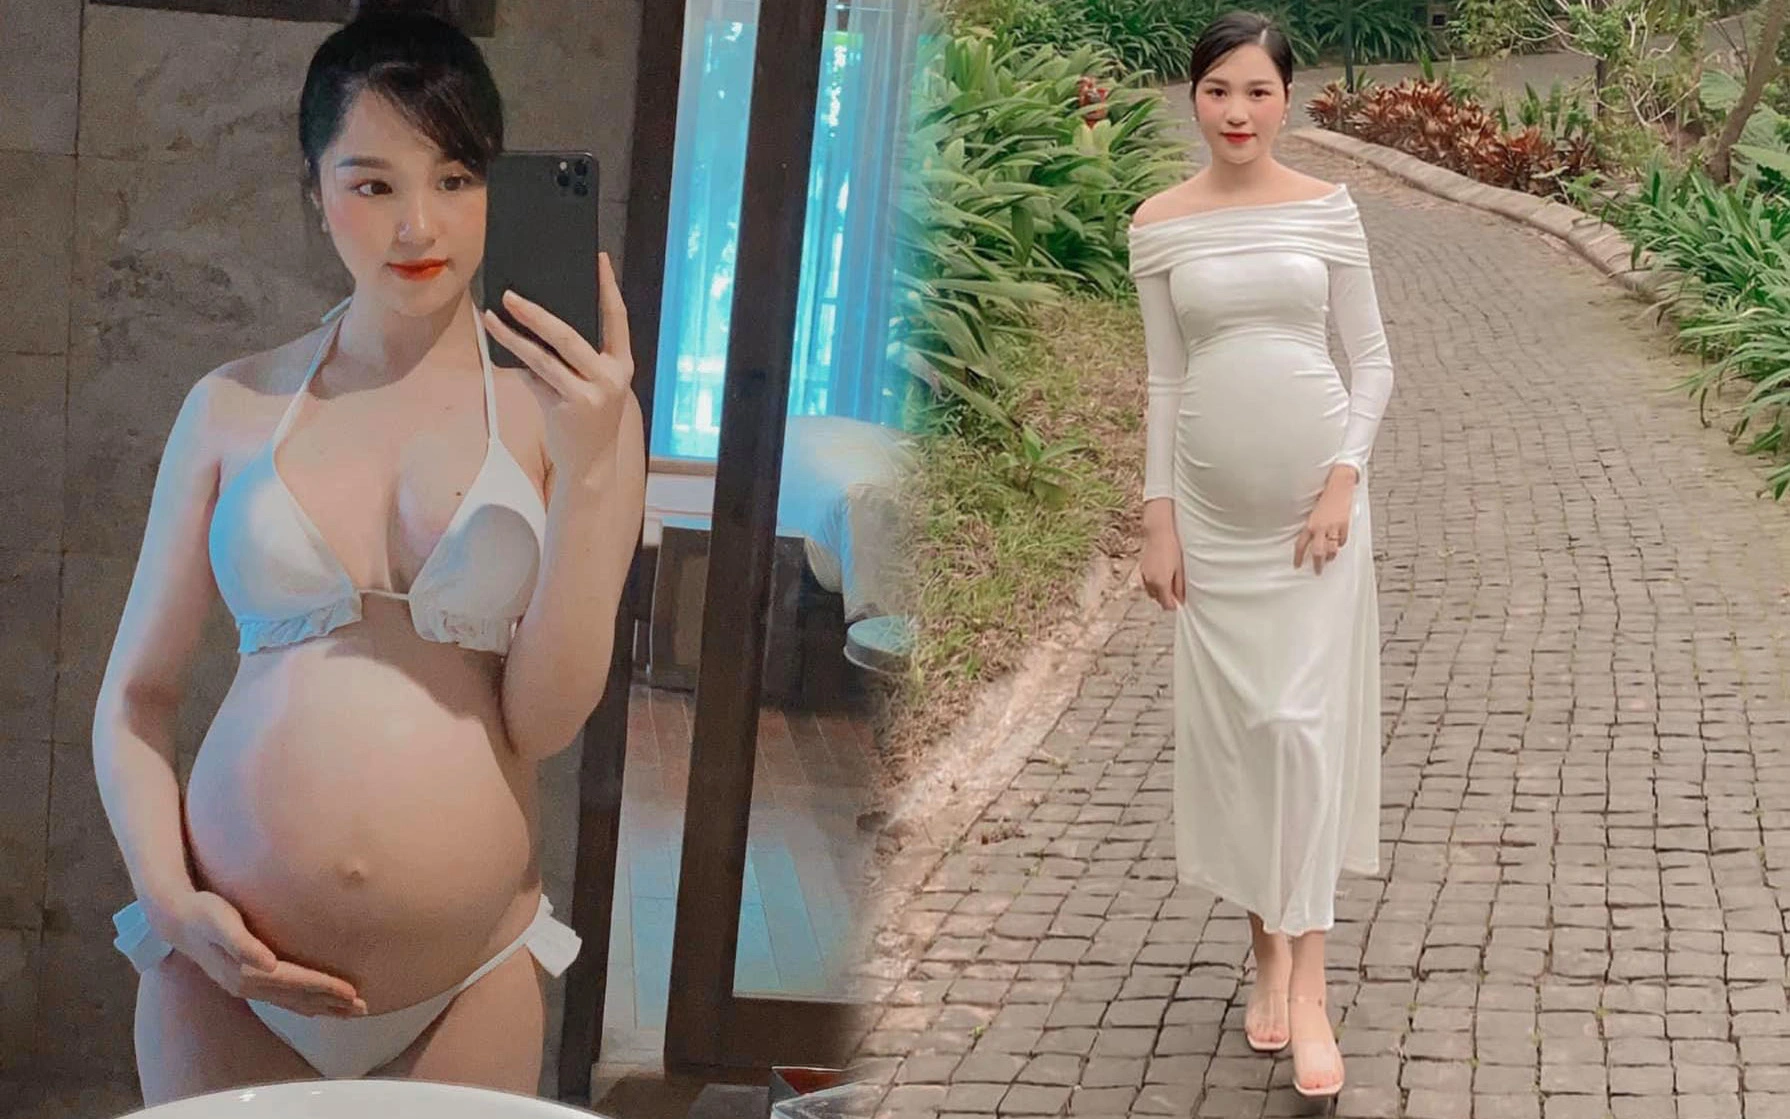 9x Hà Nội mang thai đôi 8 tháng nhưng không nhìn xuống bụng thì chẳng ai biết, hội gái chưa chồng thở phào: "Chẳng phải bà bầu nào cũng xuống sắc"